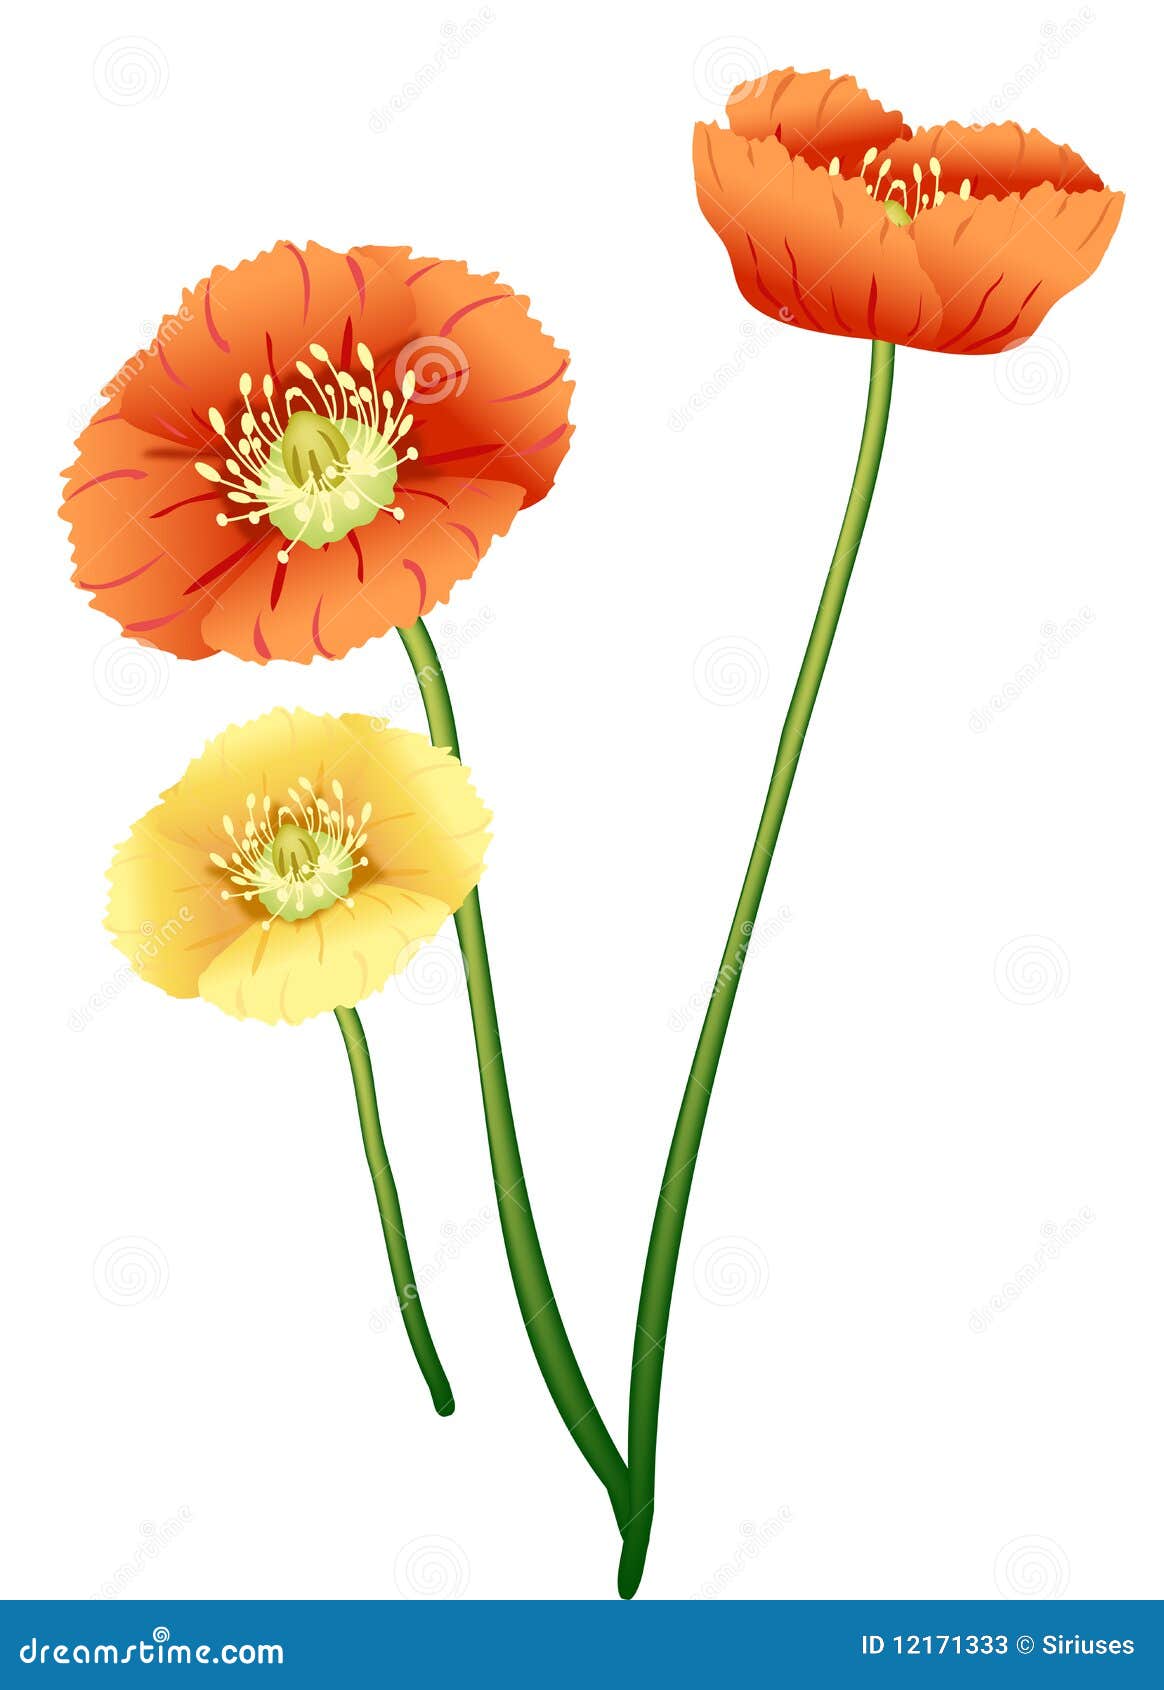 Poppy flower stock illustration. Illustration of light - 12171333